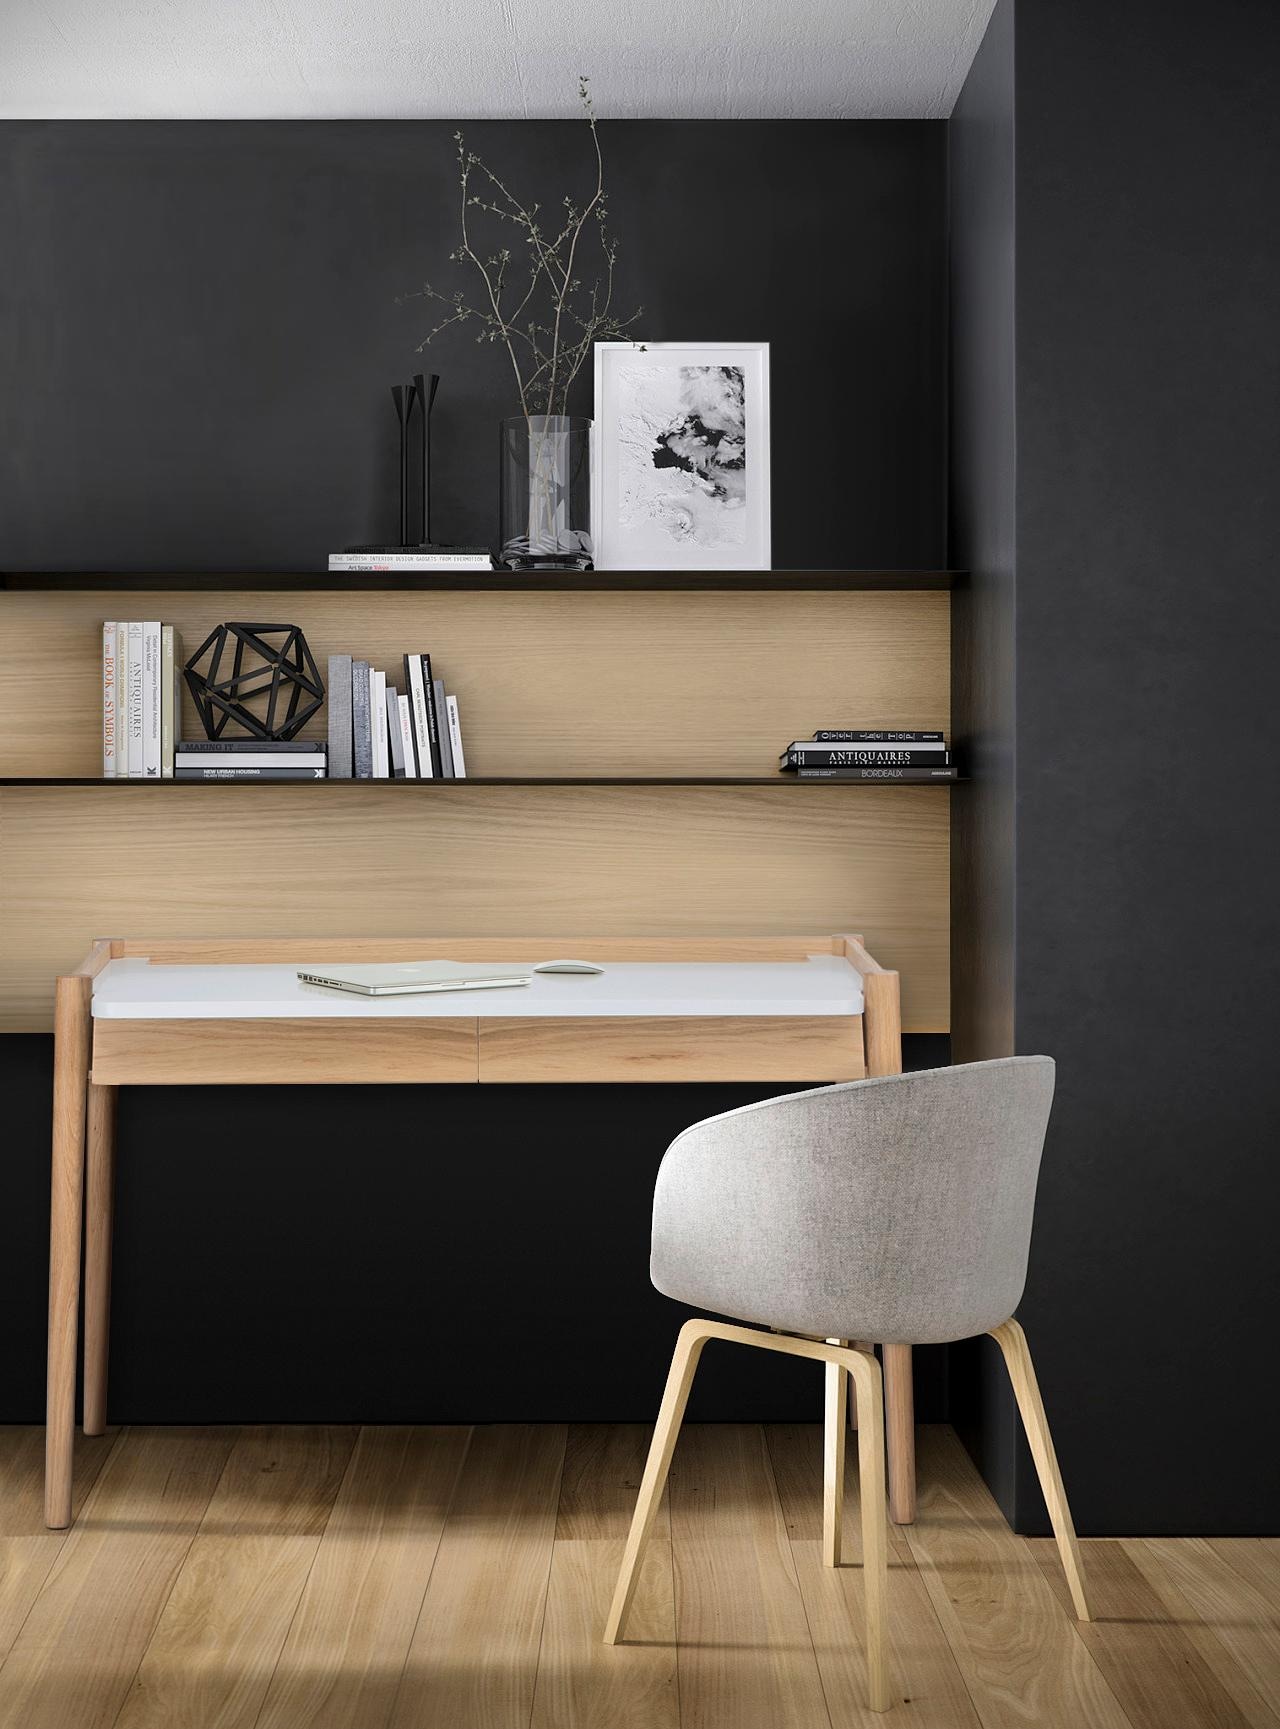 Woodman Schreibtisch »Feldbach«, im schlichten skandinavischen Design